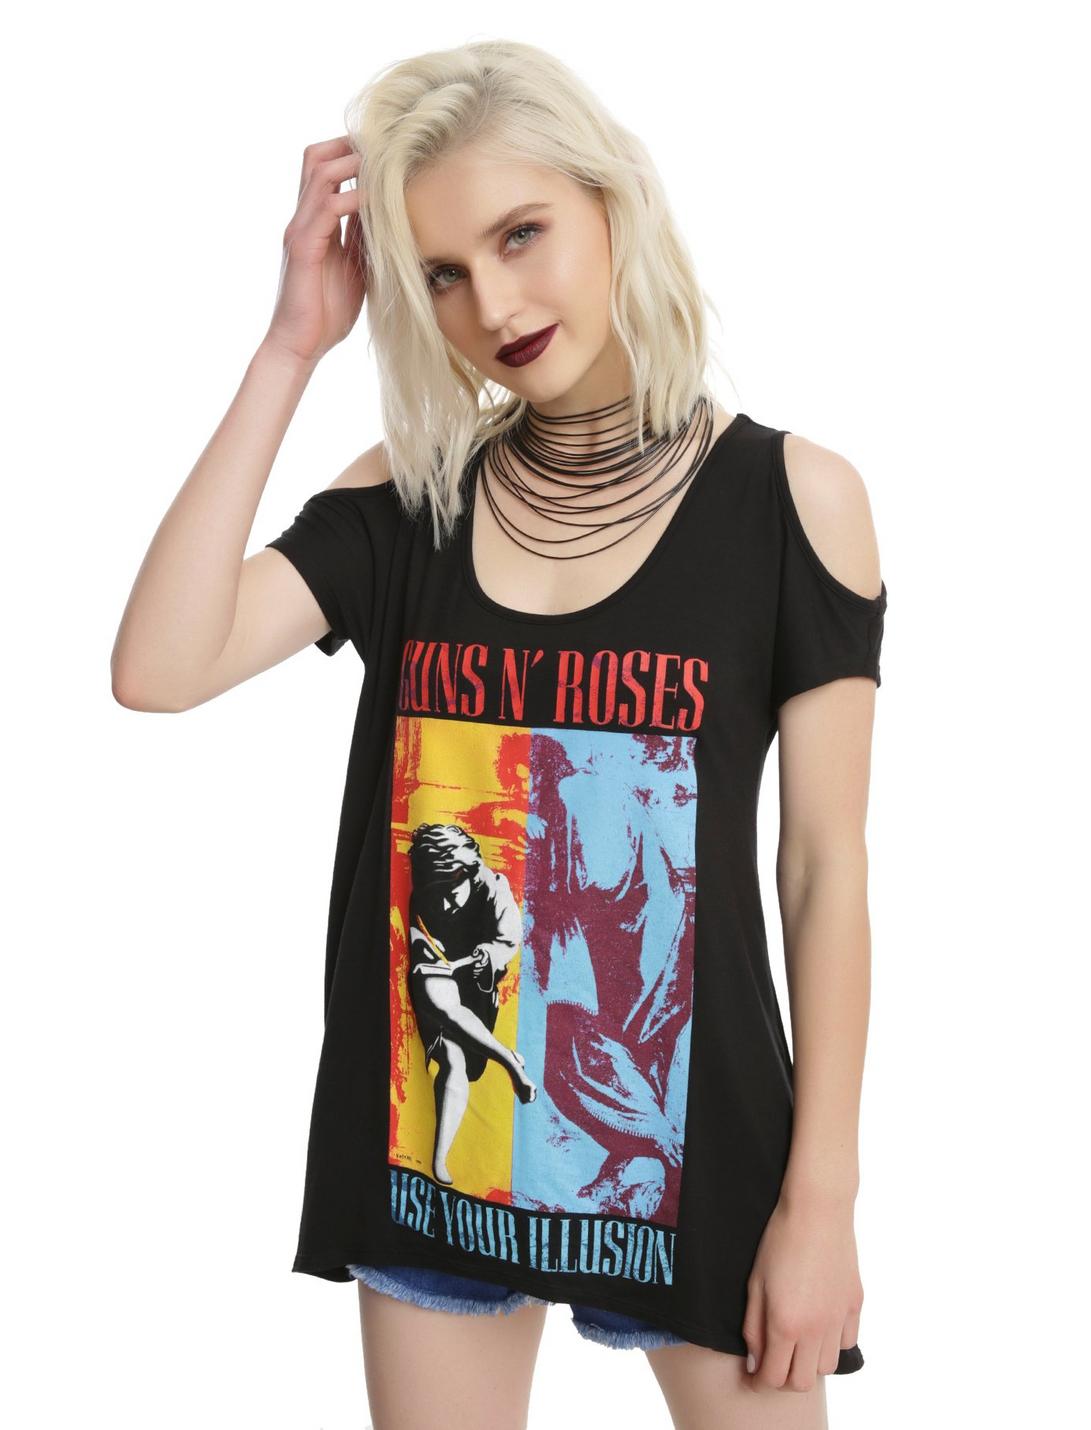 Guns N' Roses Use Your Illusion Girls Cold Shoulder Top, BLACK, hi-res